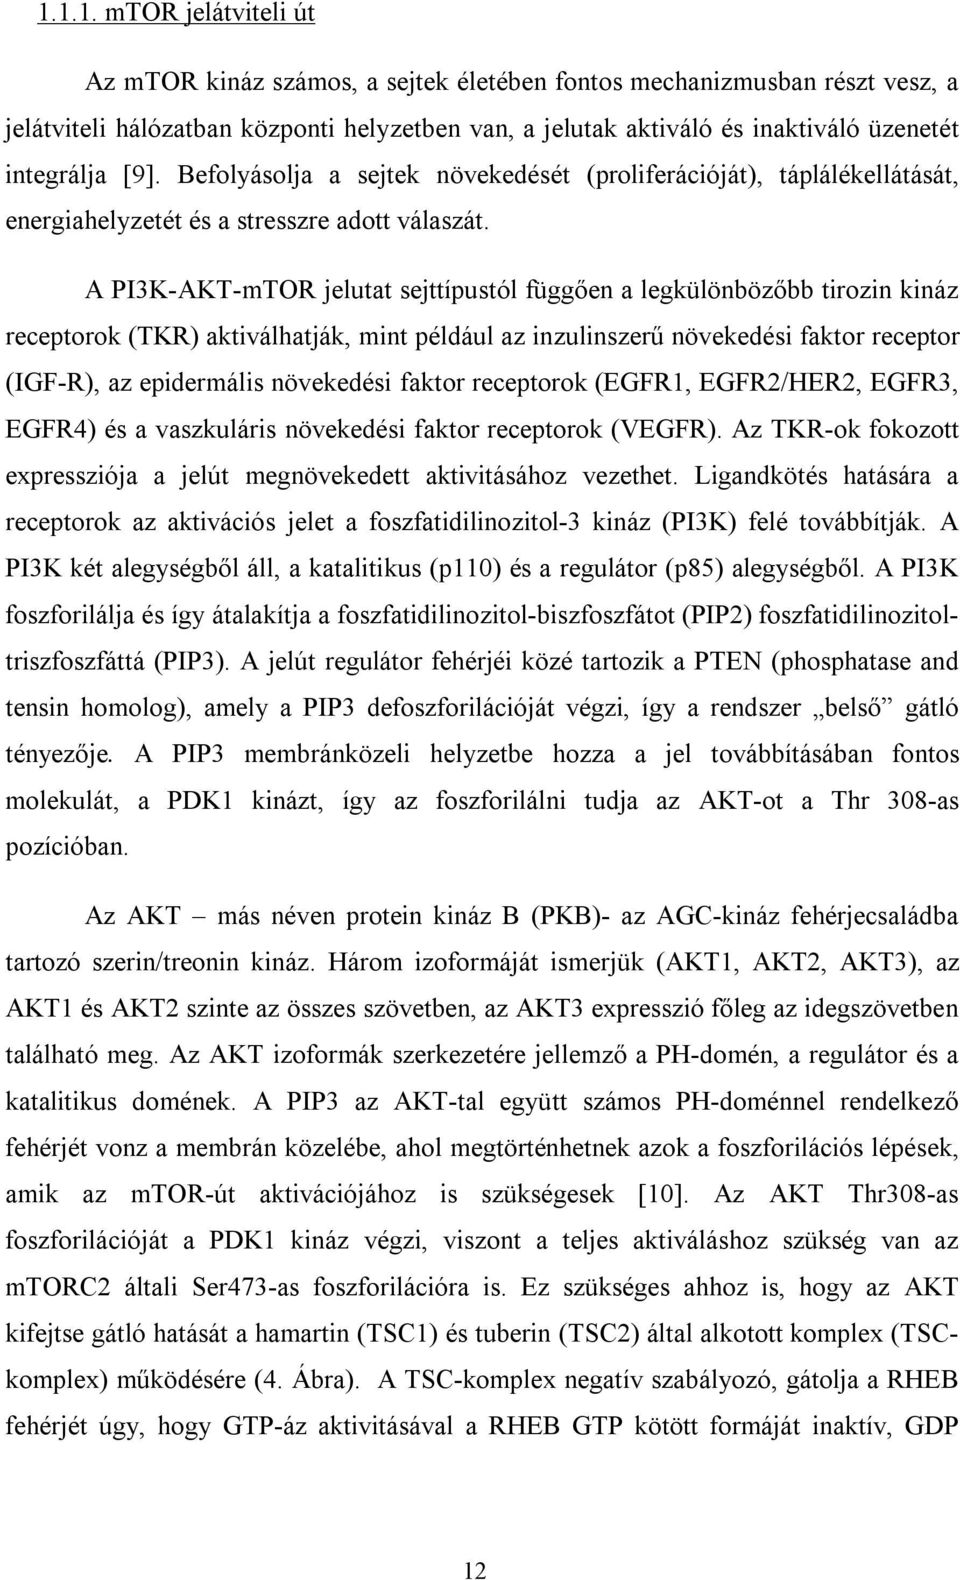 A PI3K-AKT-mTOR jelutat sejttípustól függően a legkülönbözőbb tirozin kináz receptorok (TKR) aktiválhatják, mint például az inzulinszerű növekedési faktor receptor (IGF-R), az epidermális növekedési